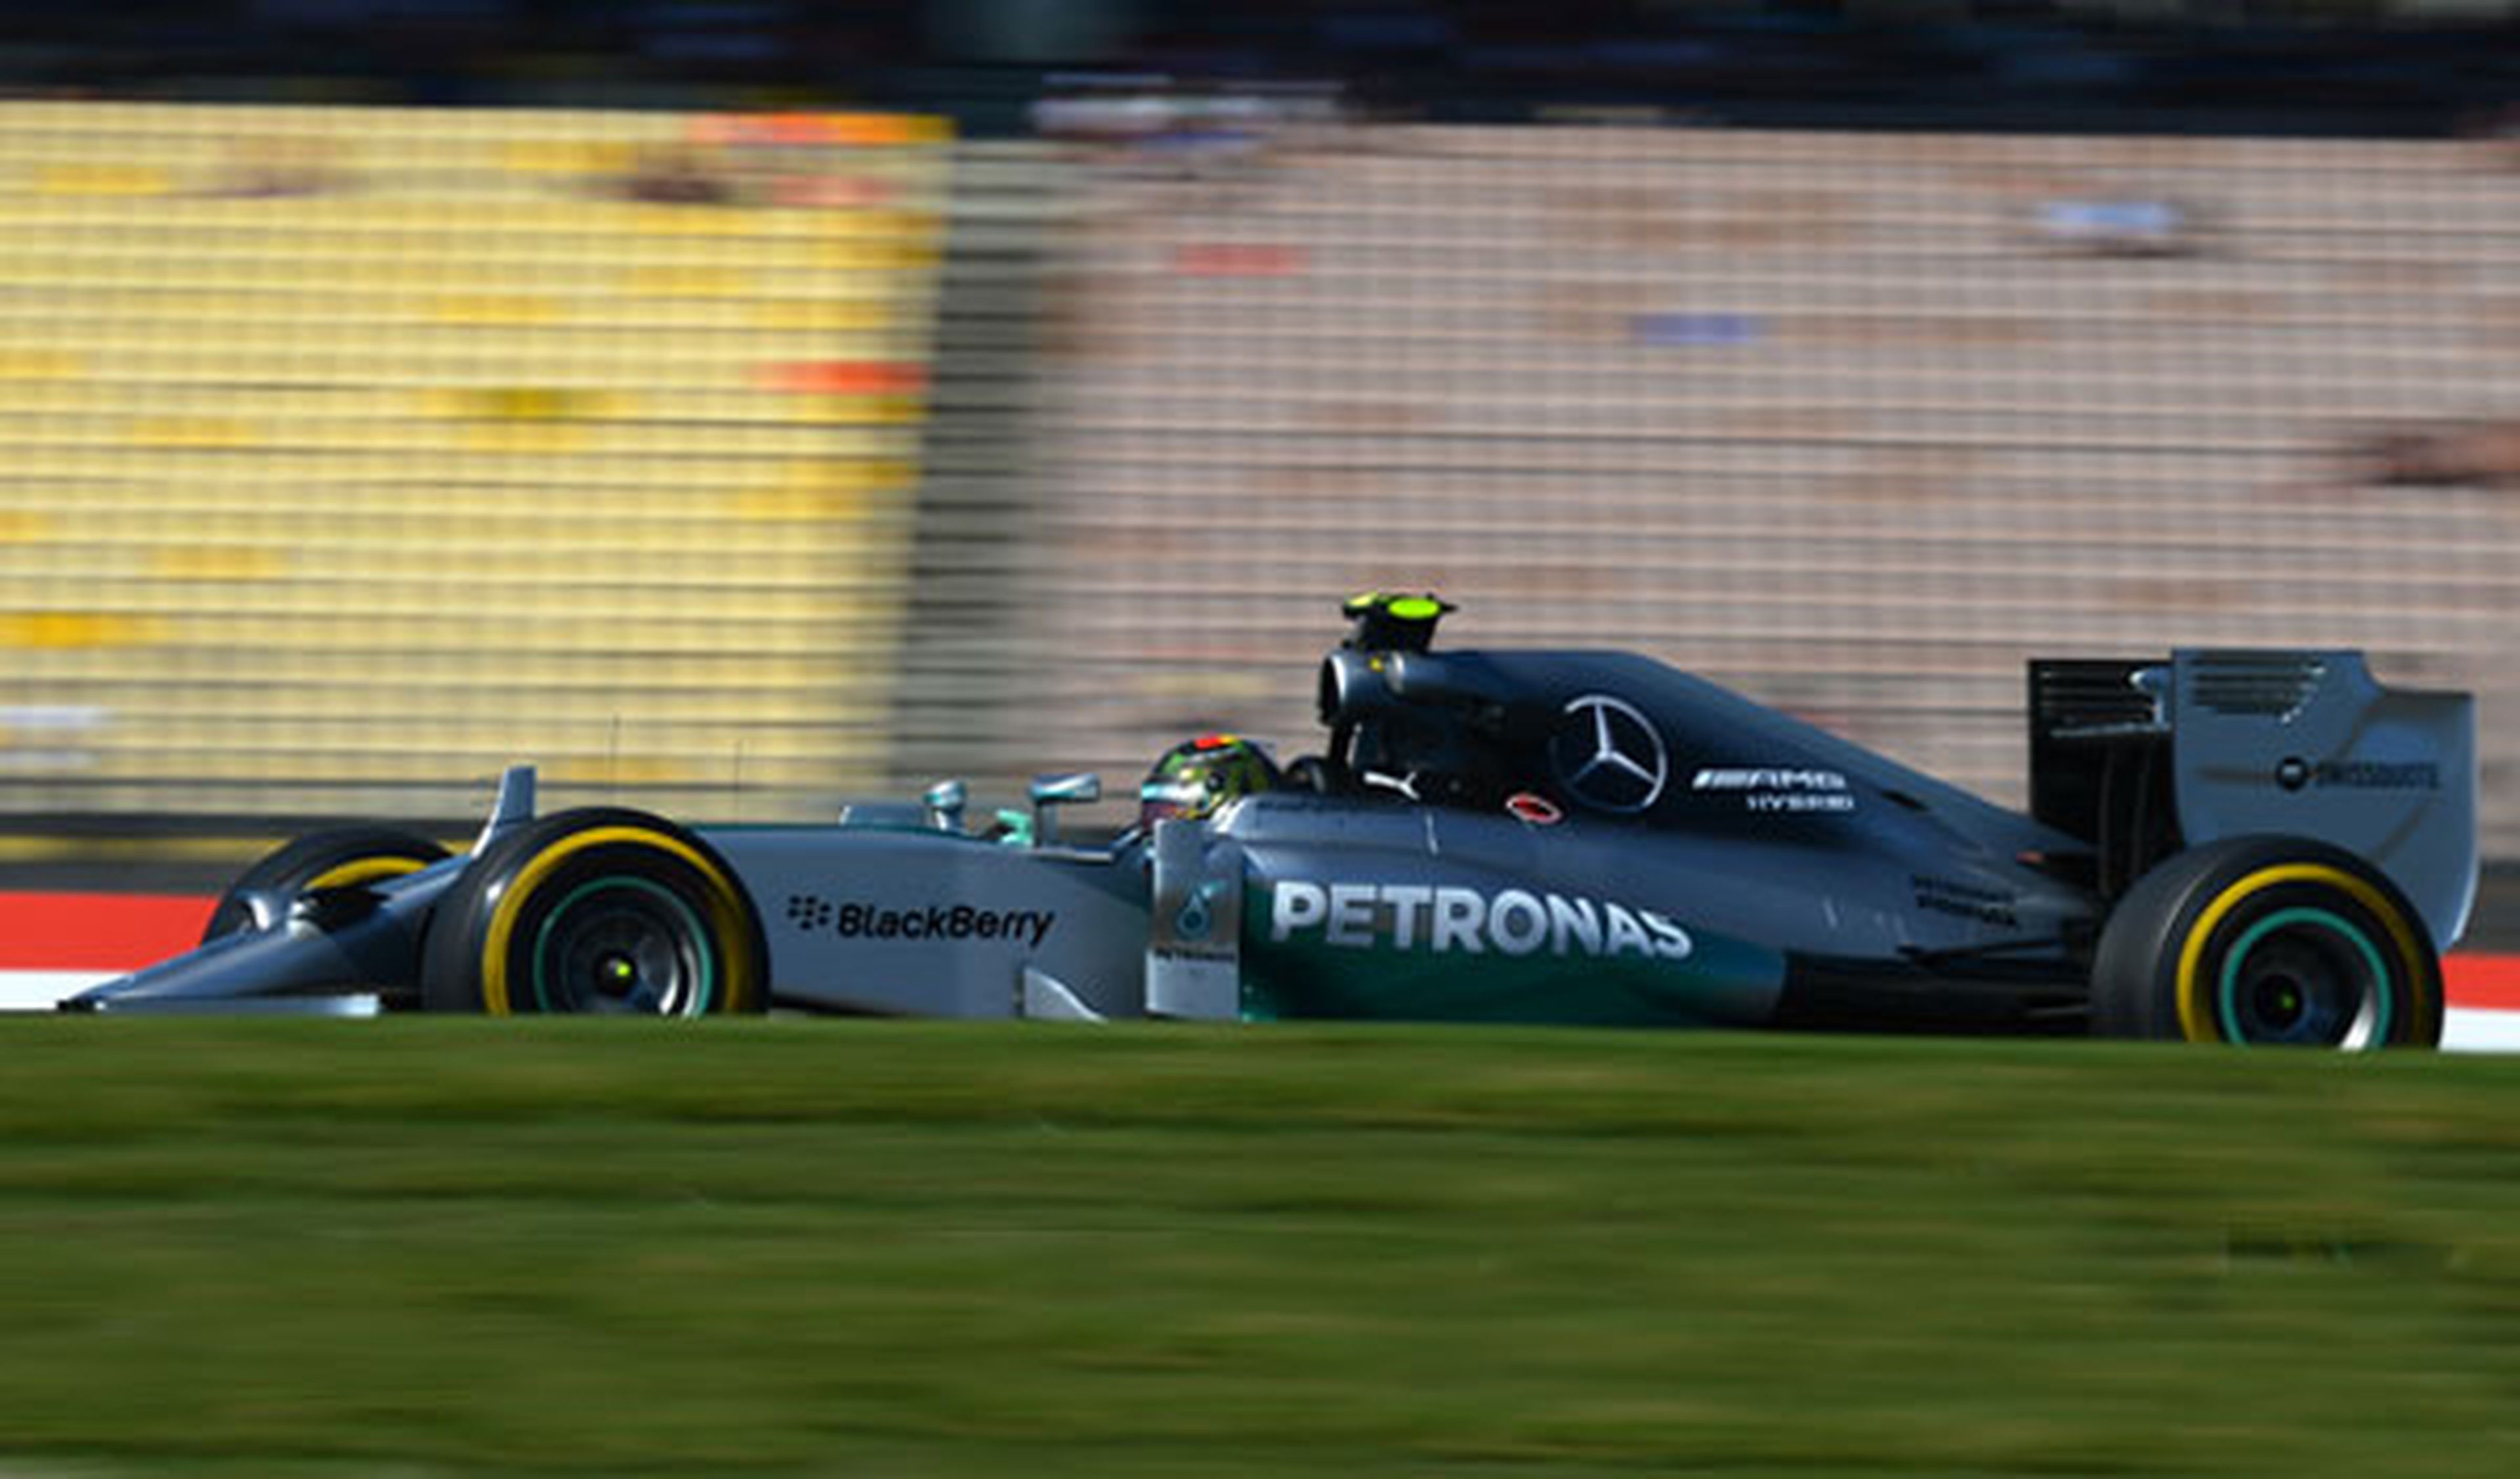 Fórmula 1: Libres 1 GP Alemania 2014. Mercedes lidera